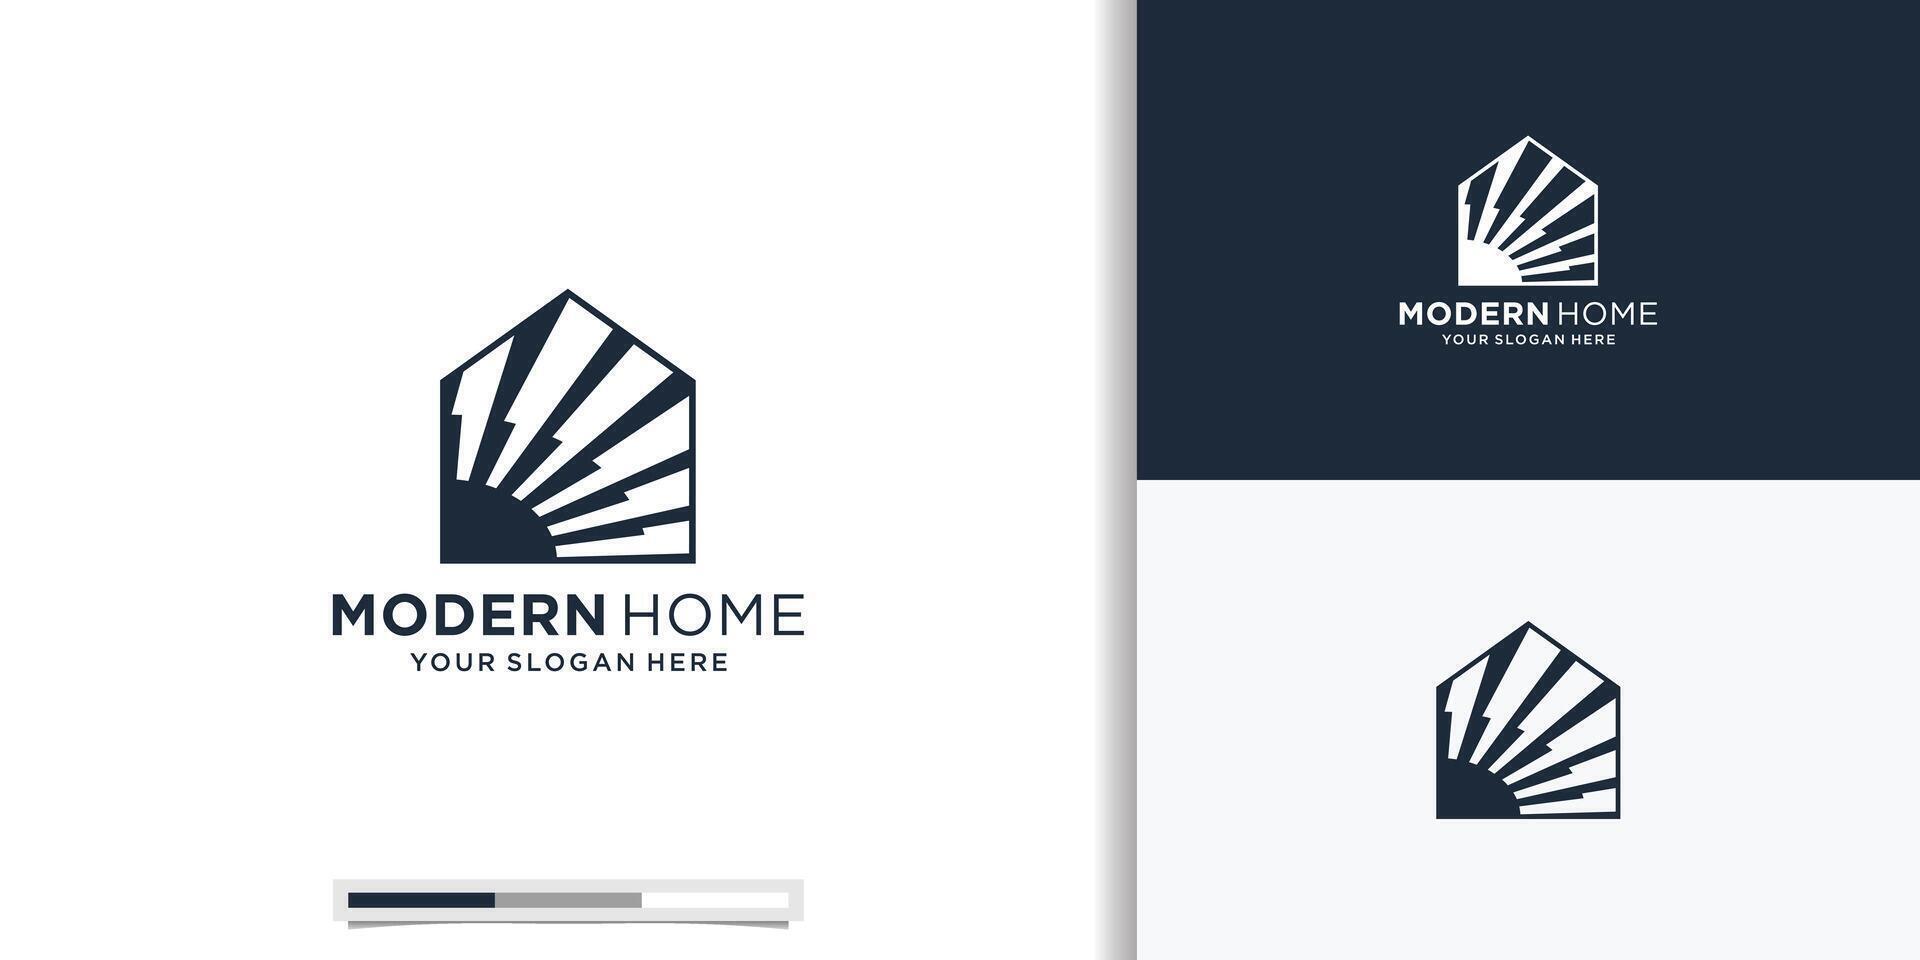 architecture minimalist home bright modern simple logo design vector icon symbol illustration